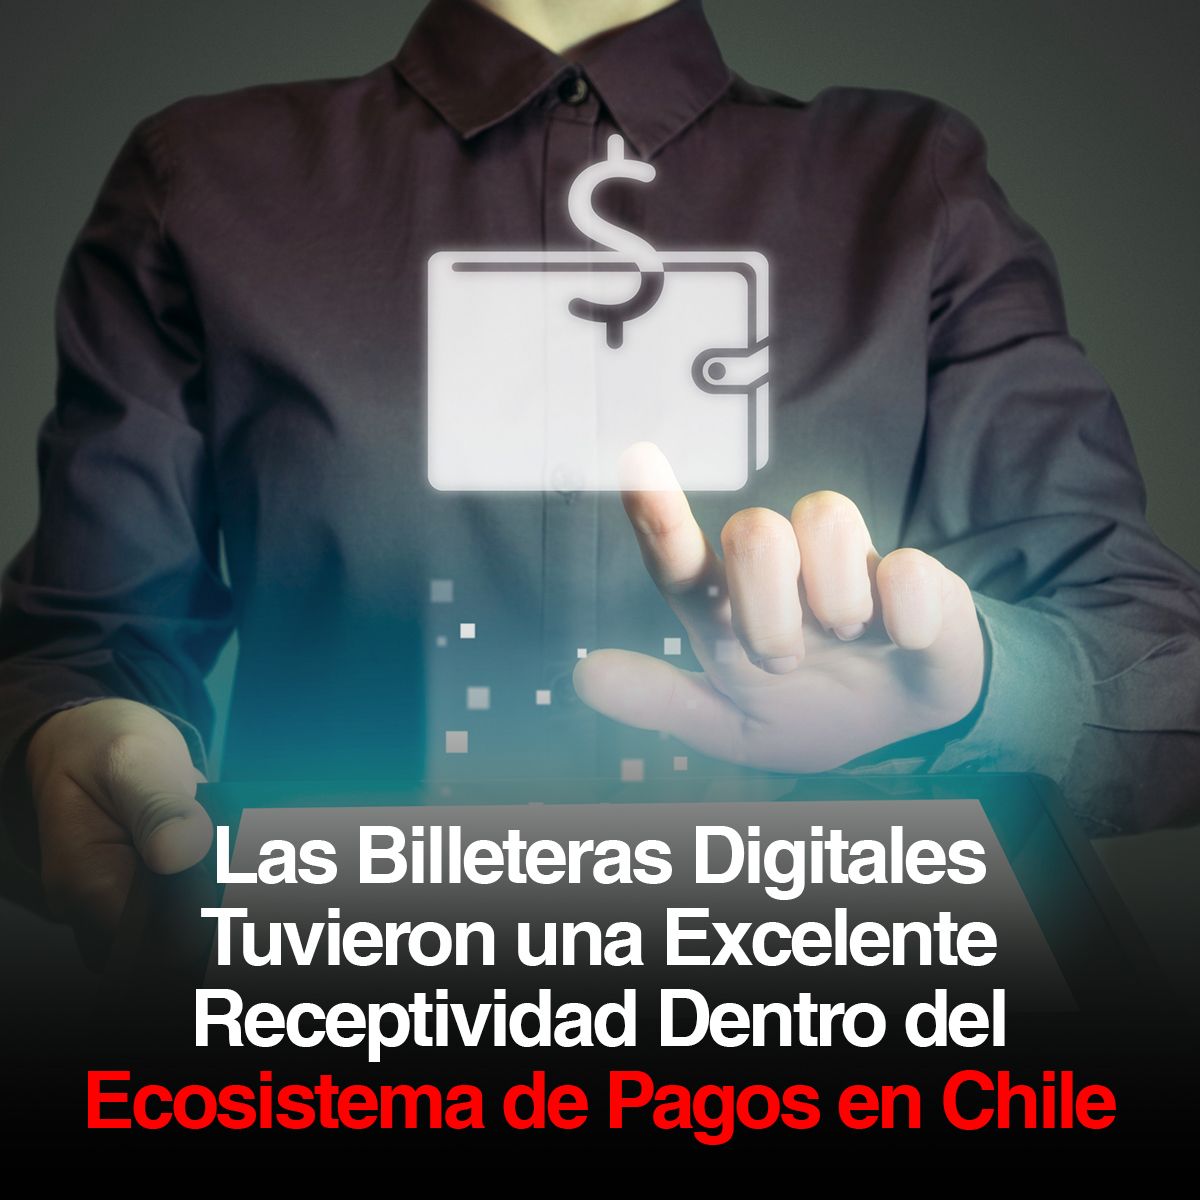 Las Billeteras Digitales Tuvieron una Excelente Receptividad Dentro del Ecosistema de Pagos en Chile